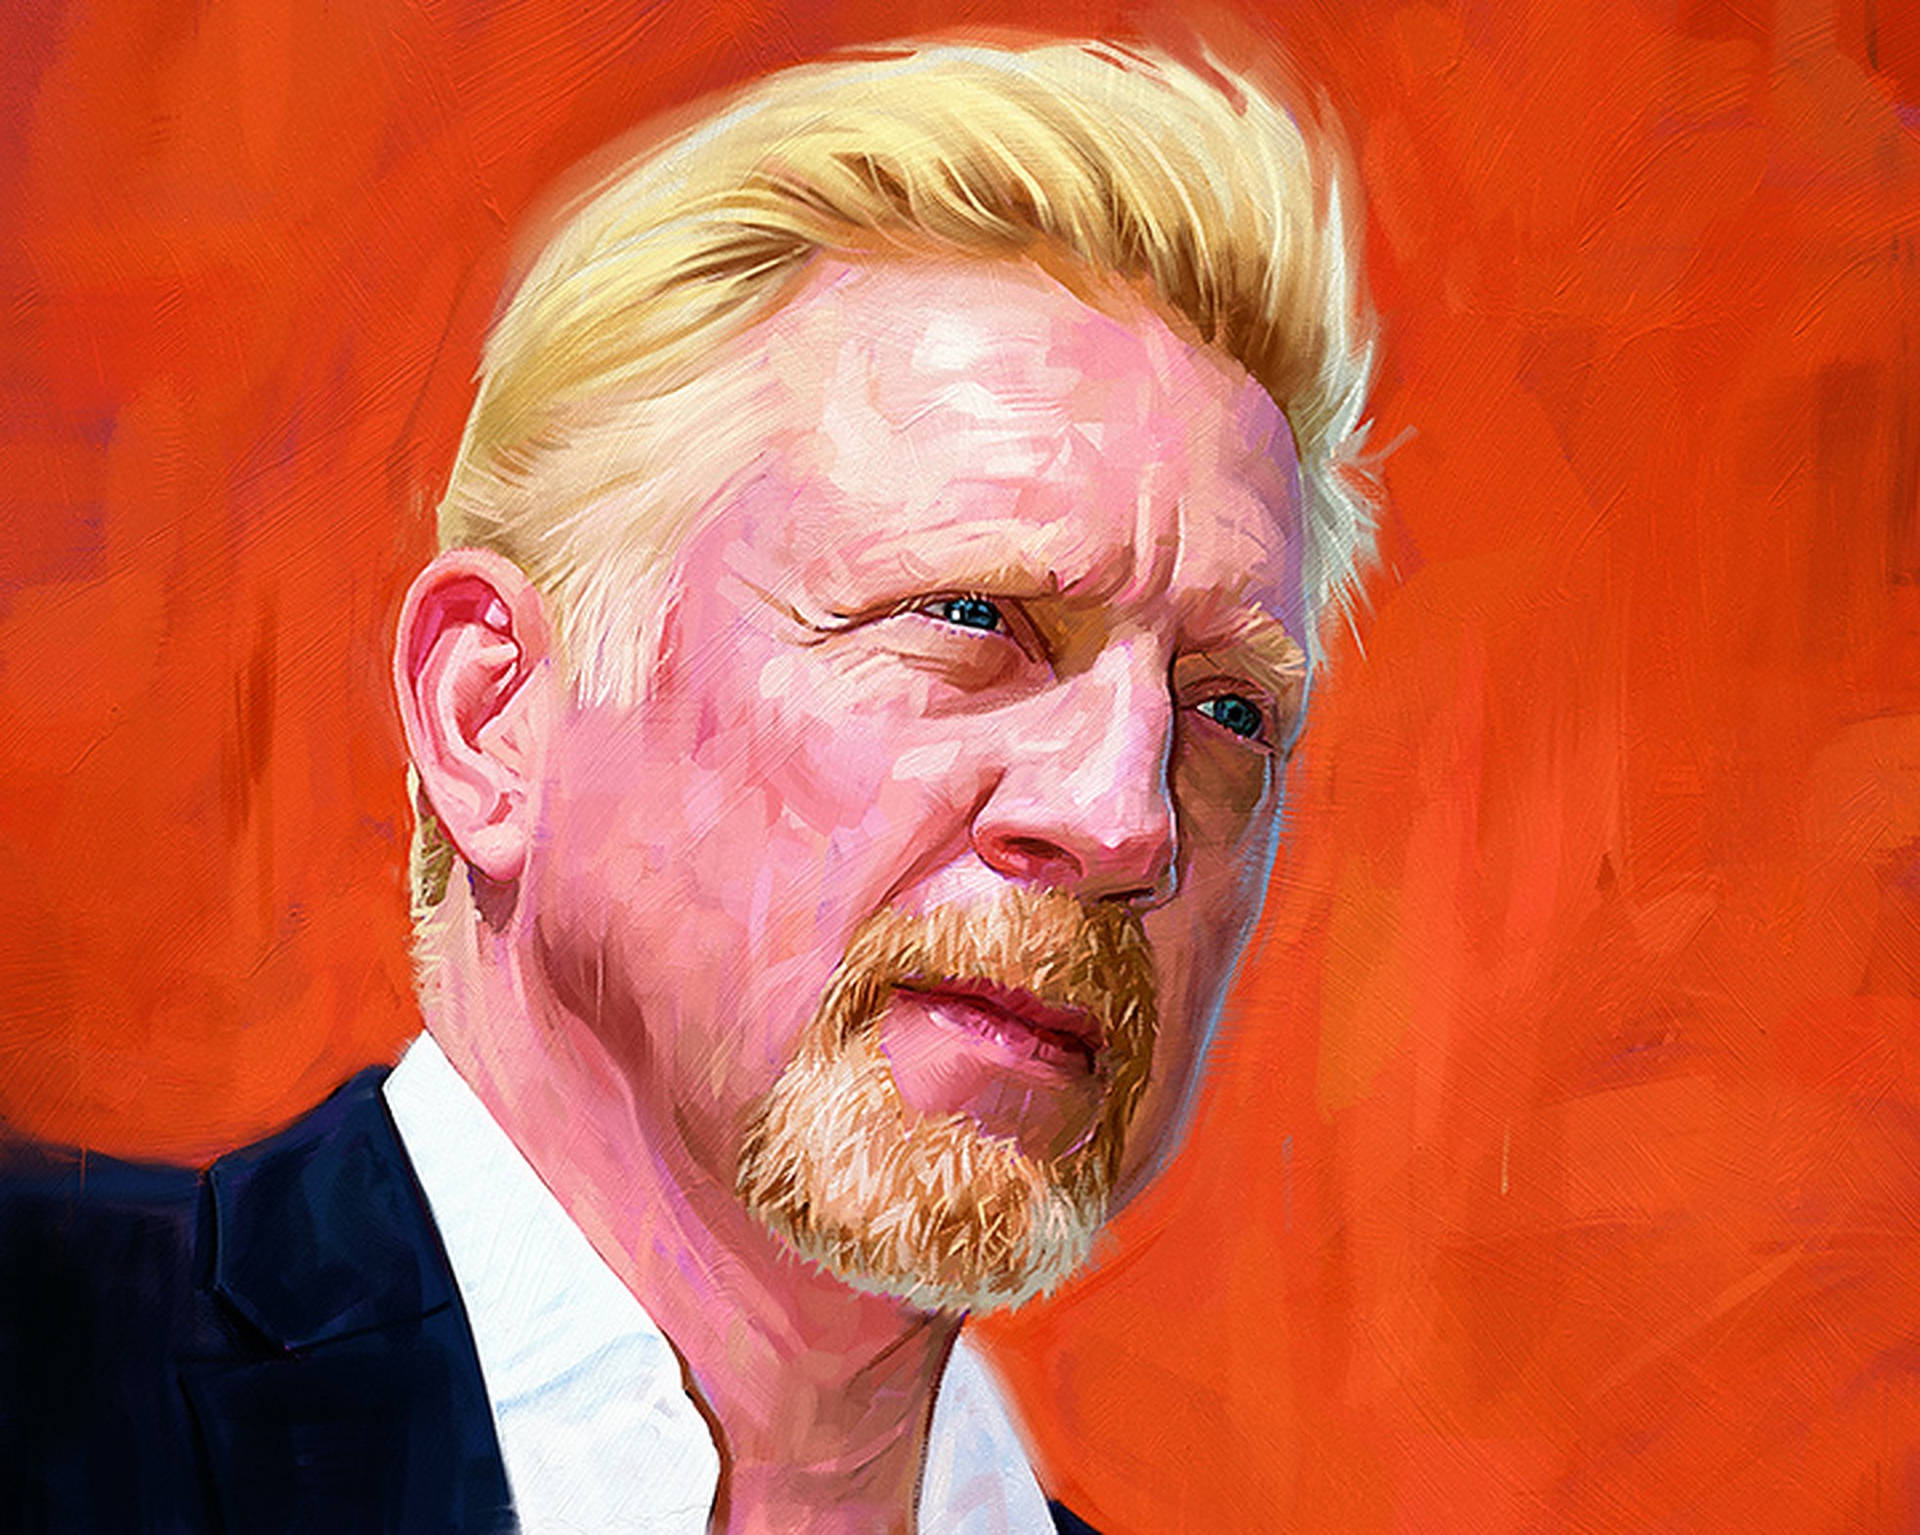 Boris Becker Digital Art Background